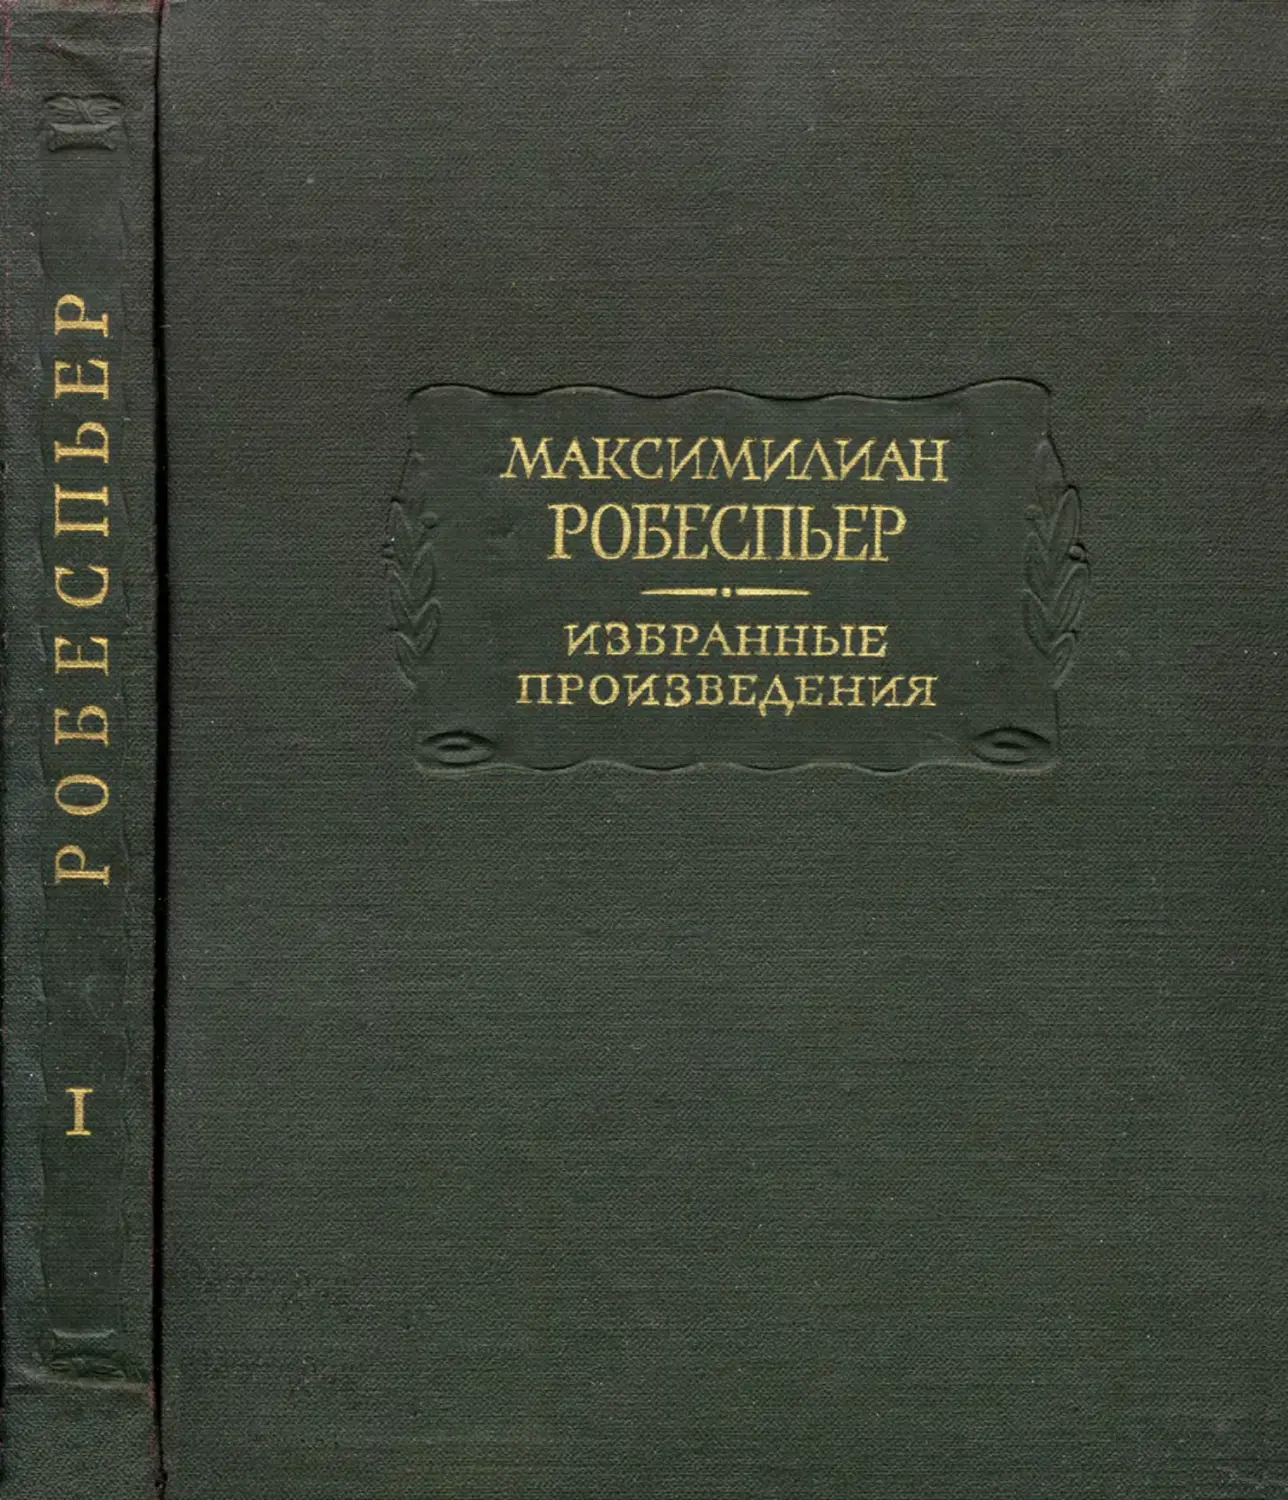 Робеспьер М. Избранные произведения. Т.I - 1965